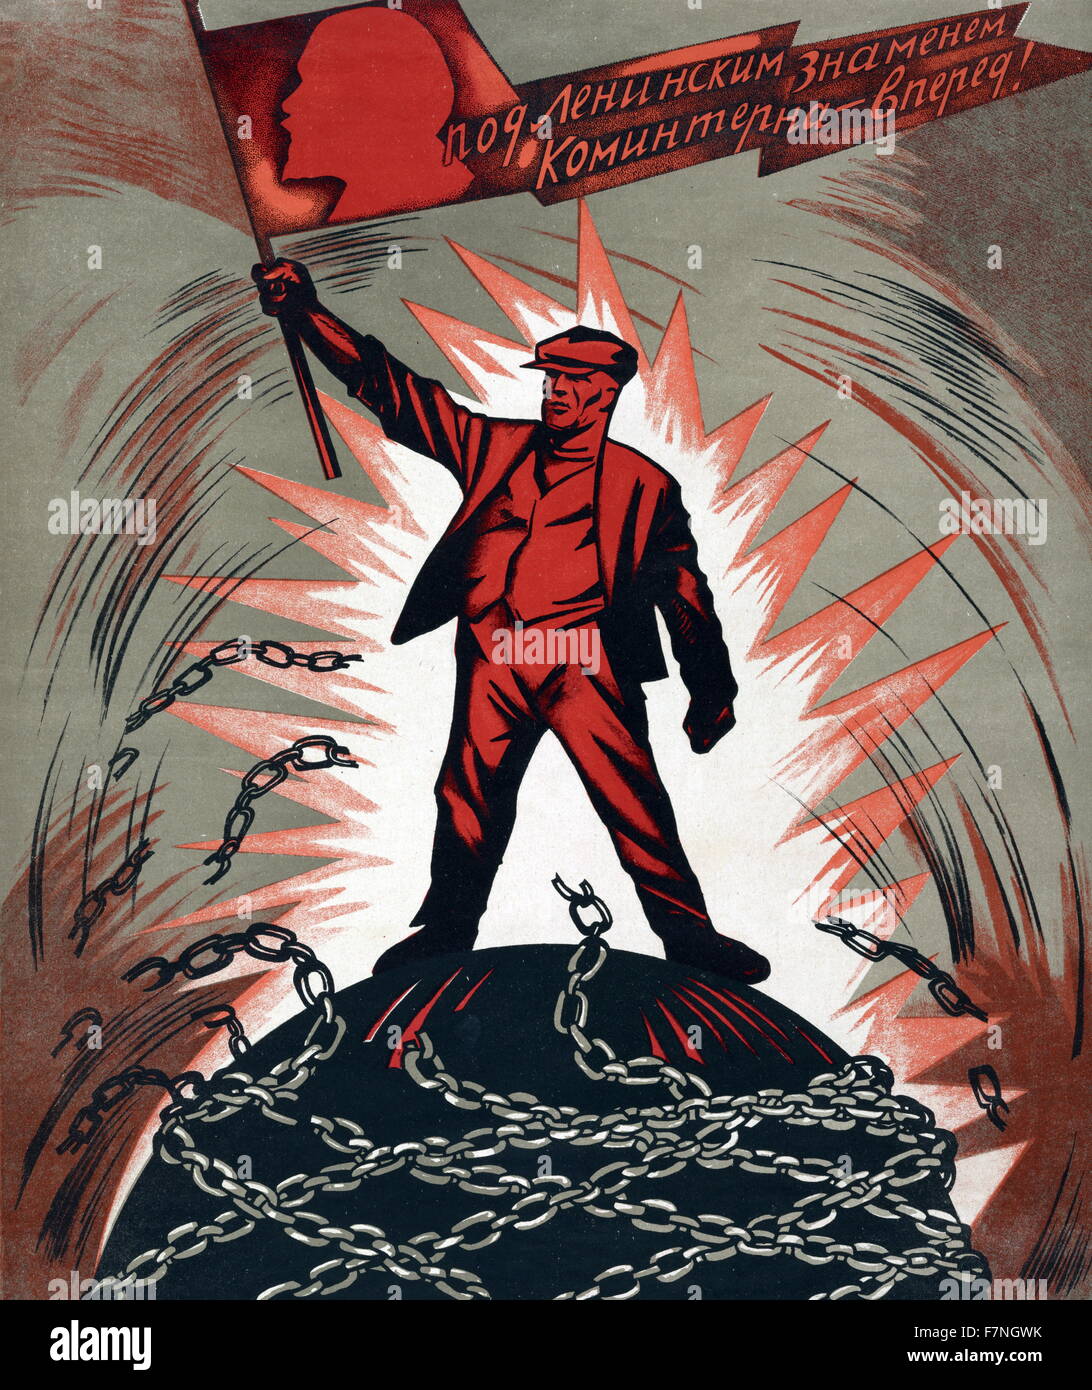 Affiche de propagande russe soviétique. 1929 Banque D'Images